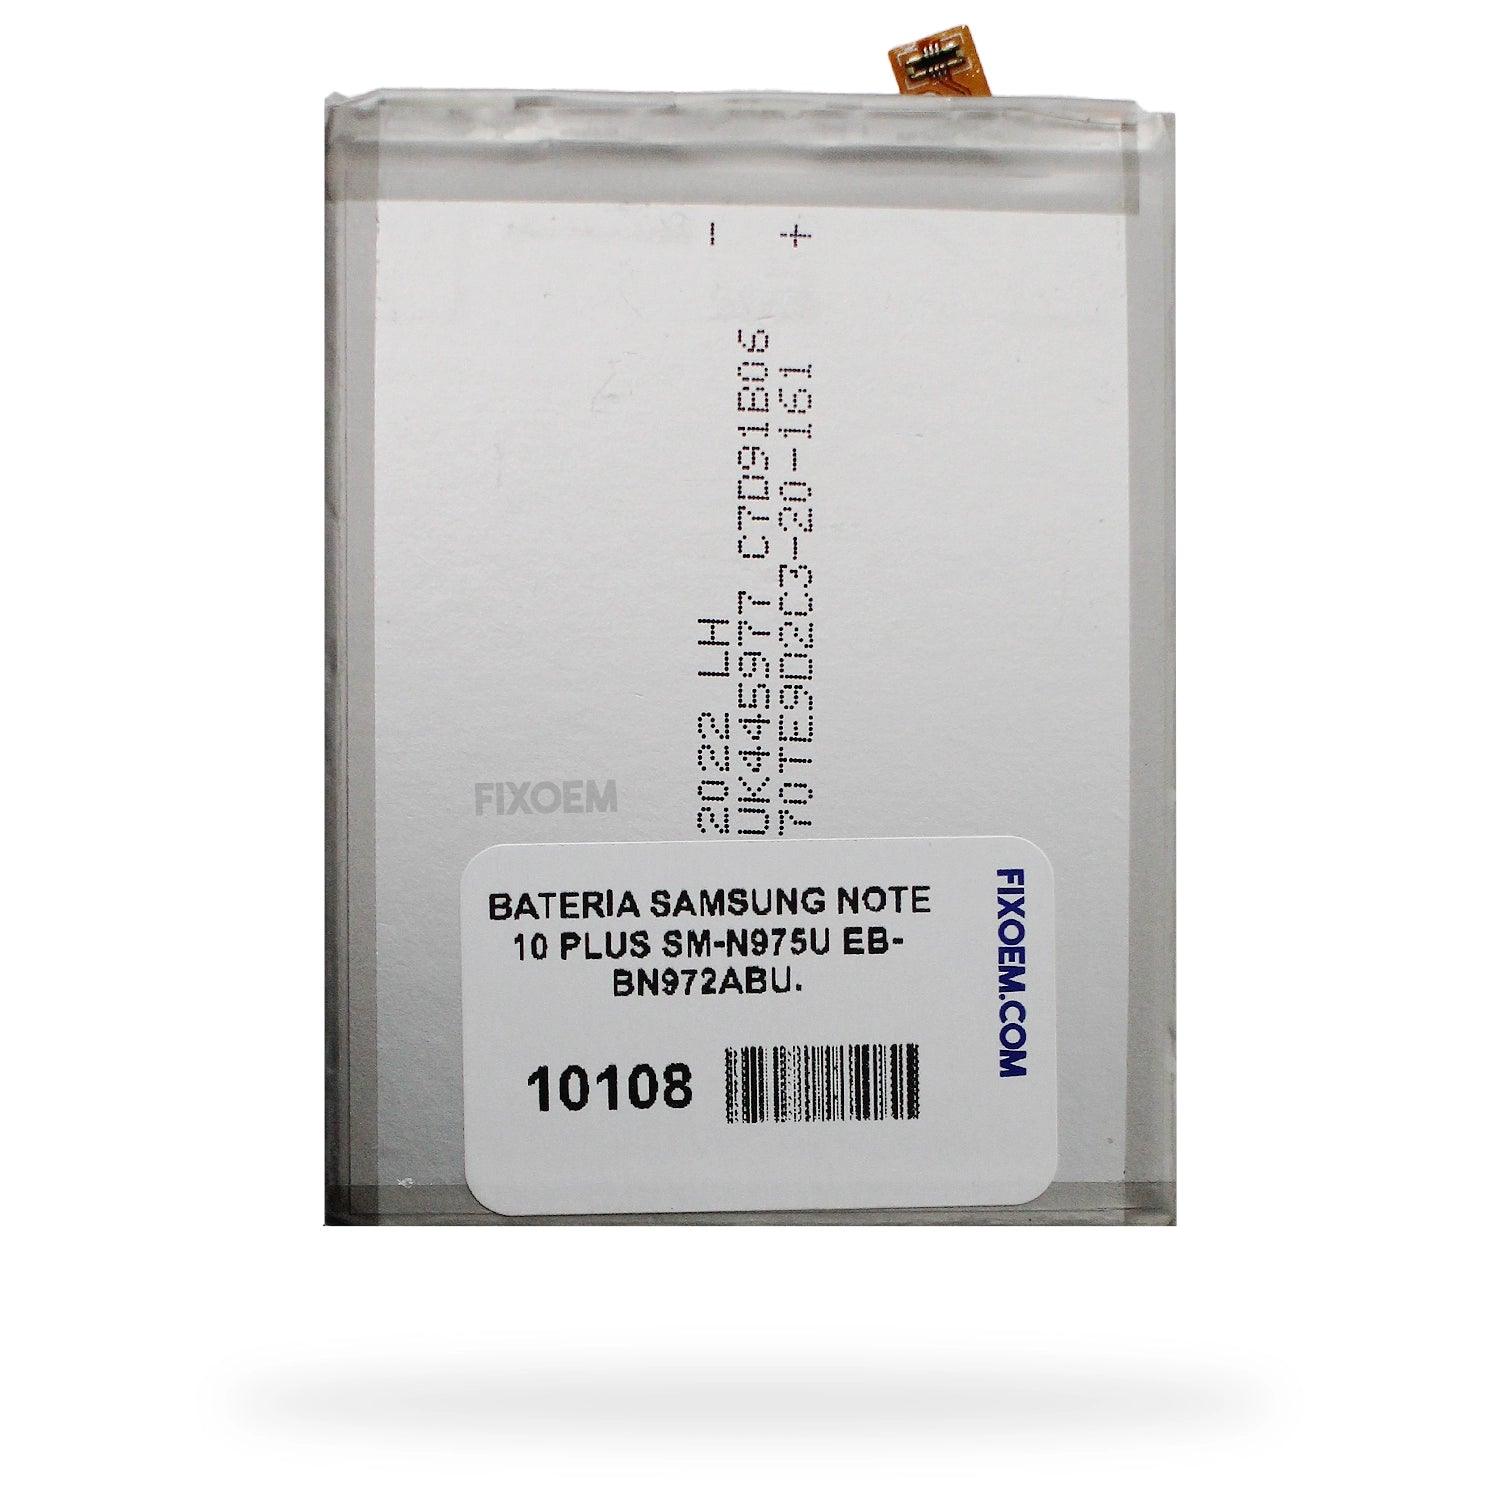 Bateria Samsung Note 10 Plus Sm-N975U Eb-Bn972Abu. a solo $ 150.00 Refaccion y puestos celulares, refurbish y microelectronica.- FixOEM